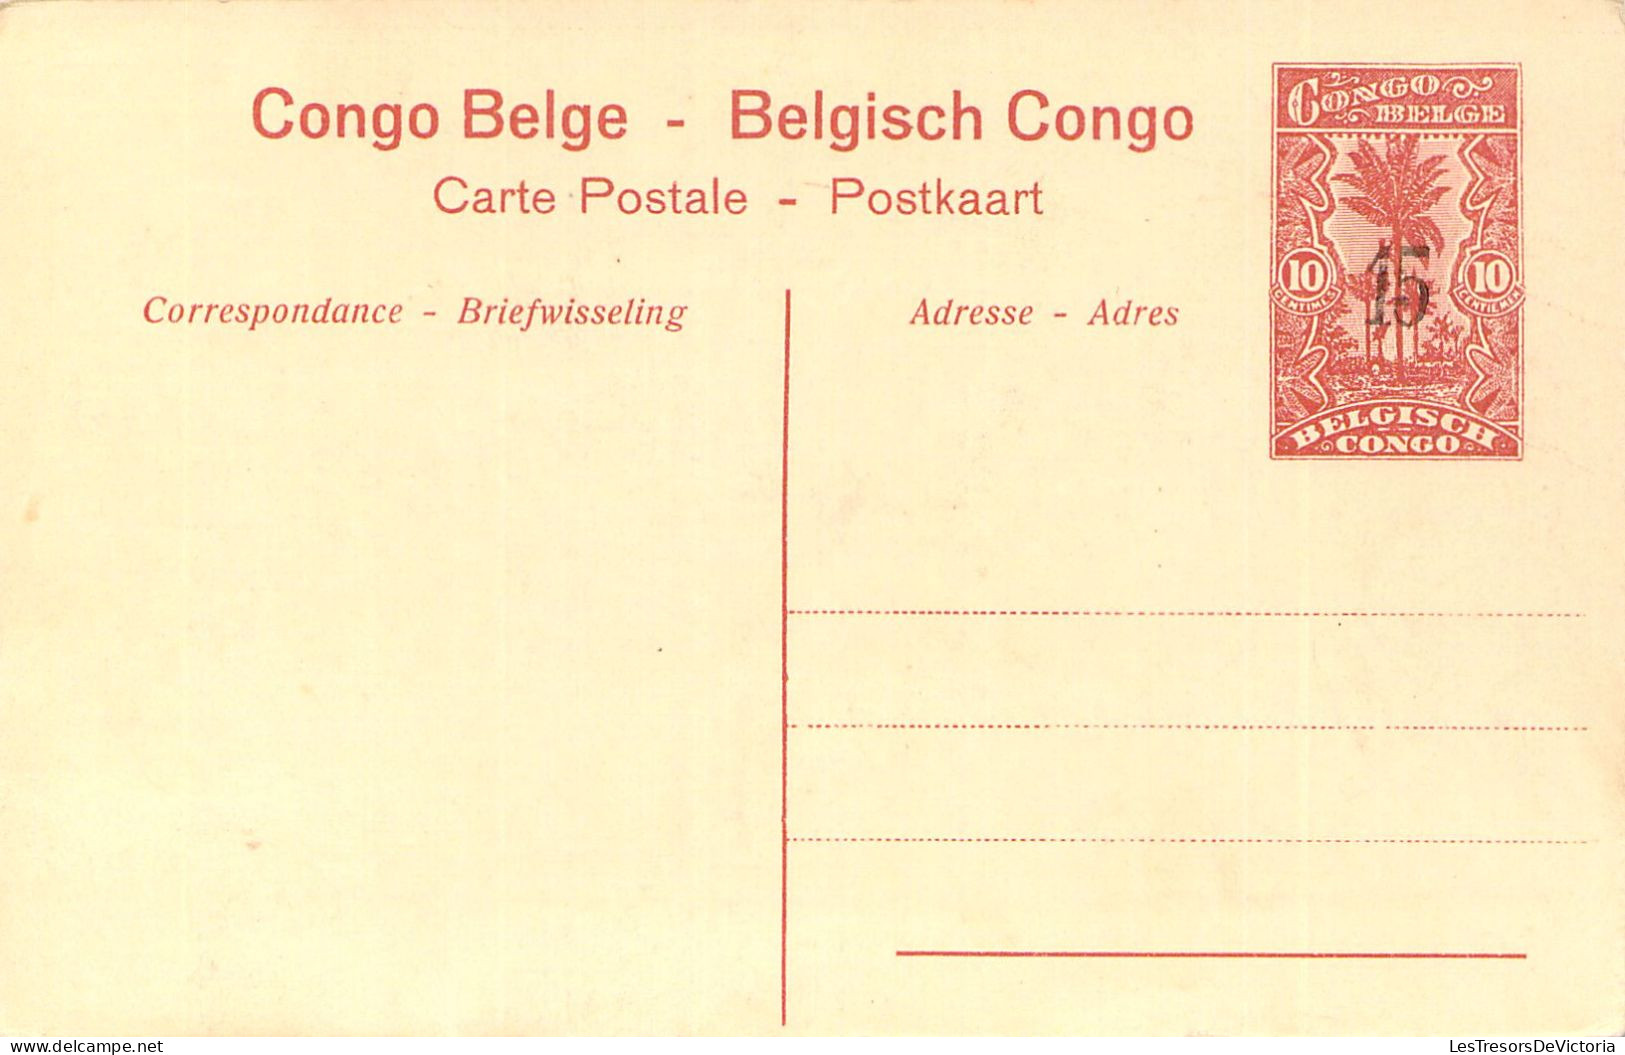 CONGO BELGE - PONTHIERVILLE - Intérieur De La Station - Carte Postale Ancienne - Belgisch-Congo